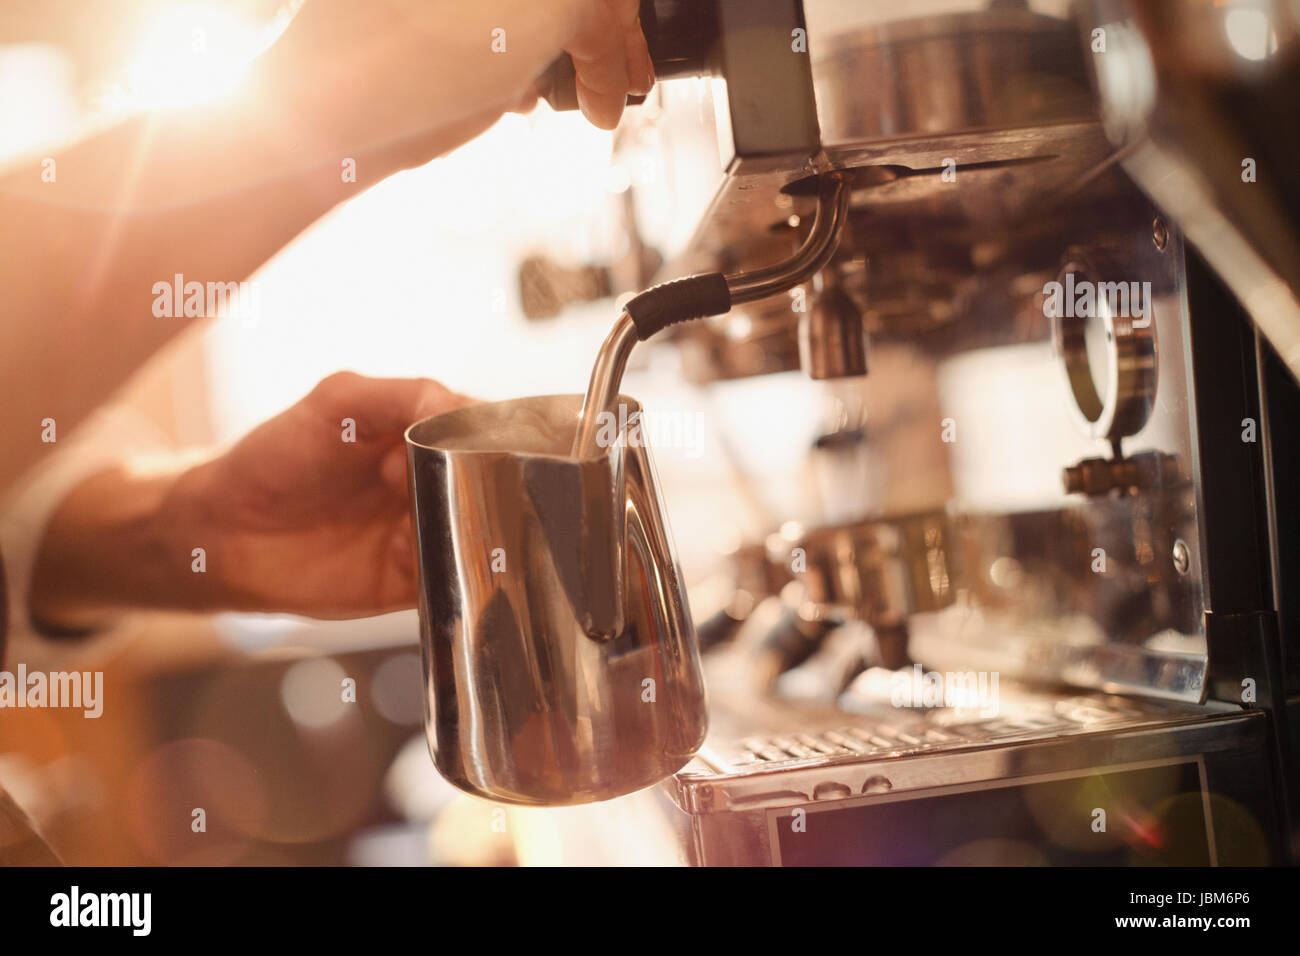 https://c8.alamy.com/compes/jbm6p6/cerrar-barista-con-maquina-de-cafe-espresso-de-vaporizador-de-leche-jbm6p6.jpg